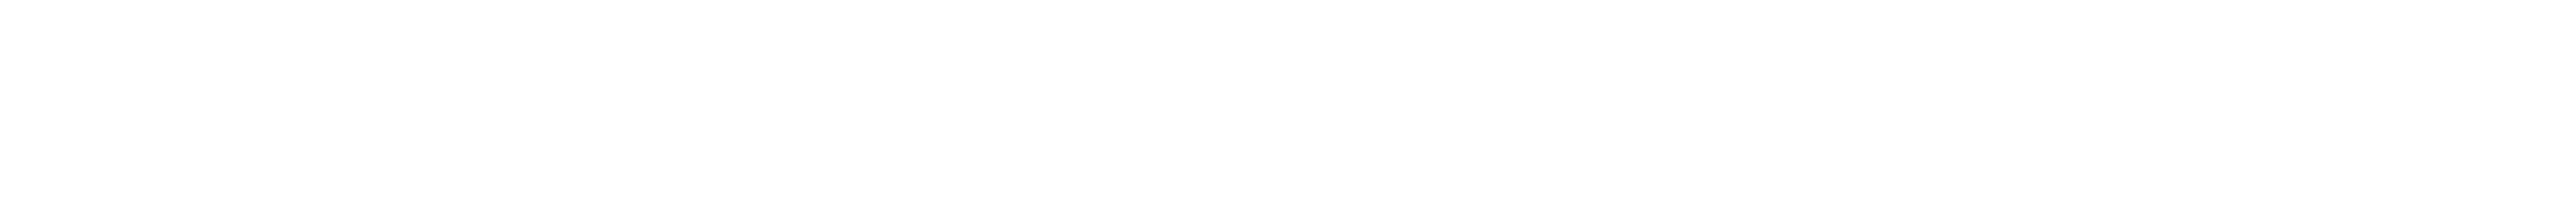 Newport Modern Dentistry Logo in White